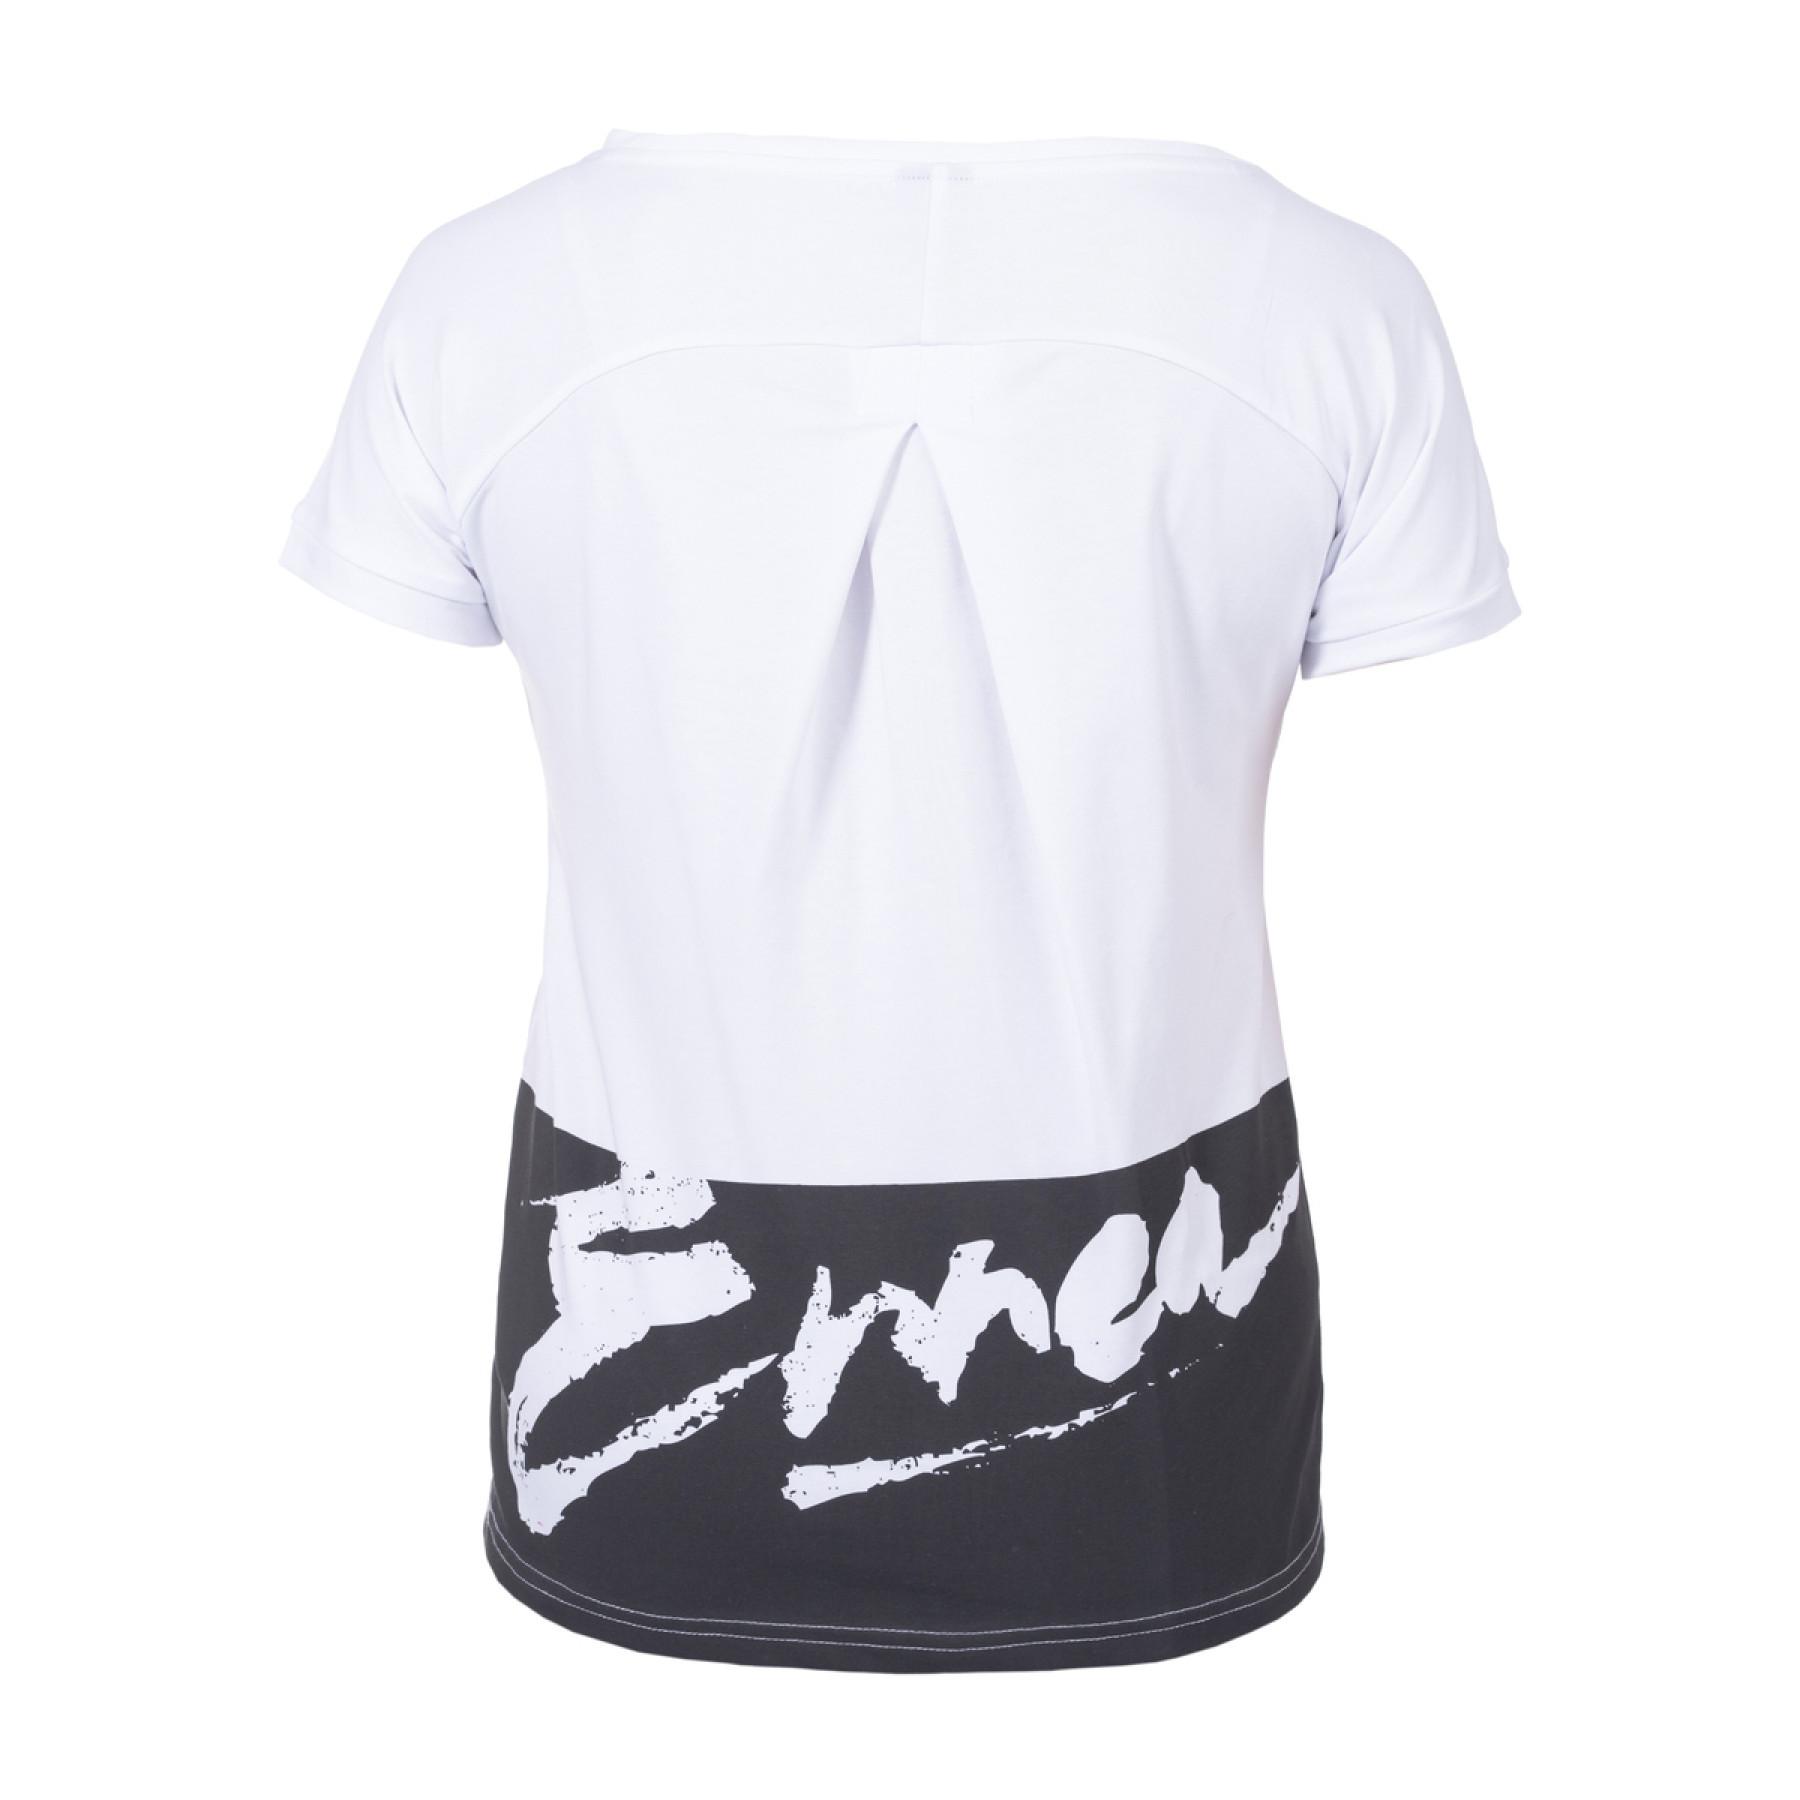 Women's T-shirt Errea rhetta